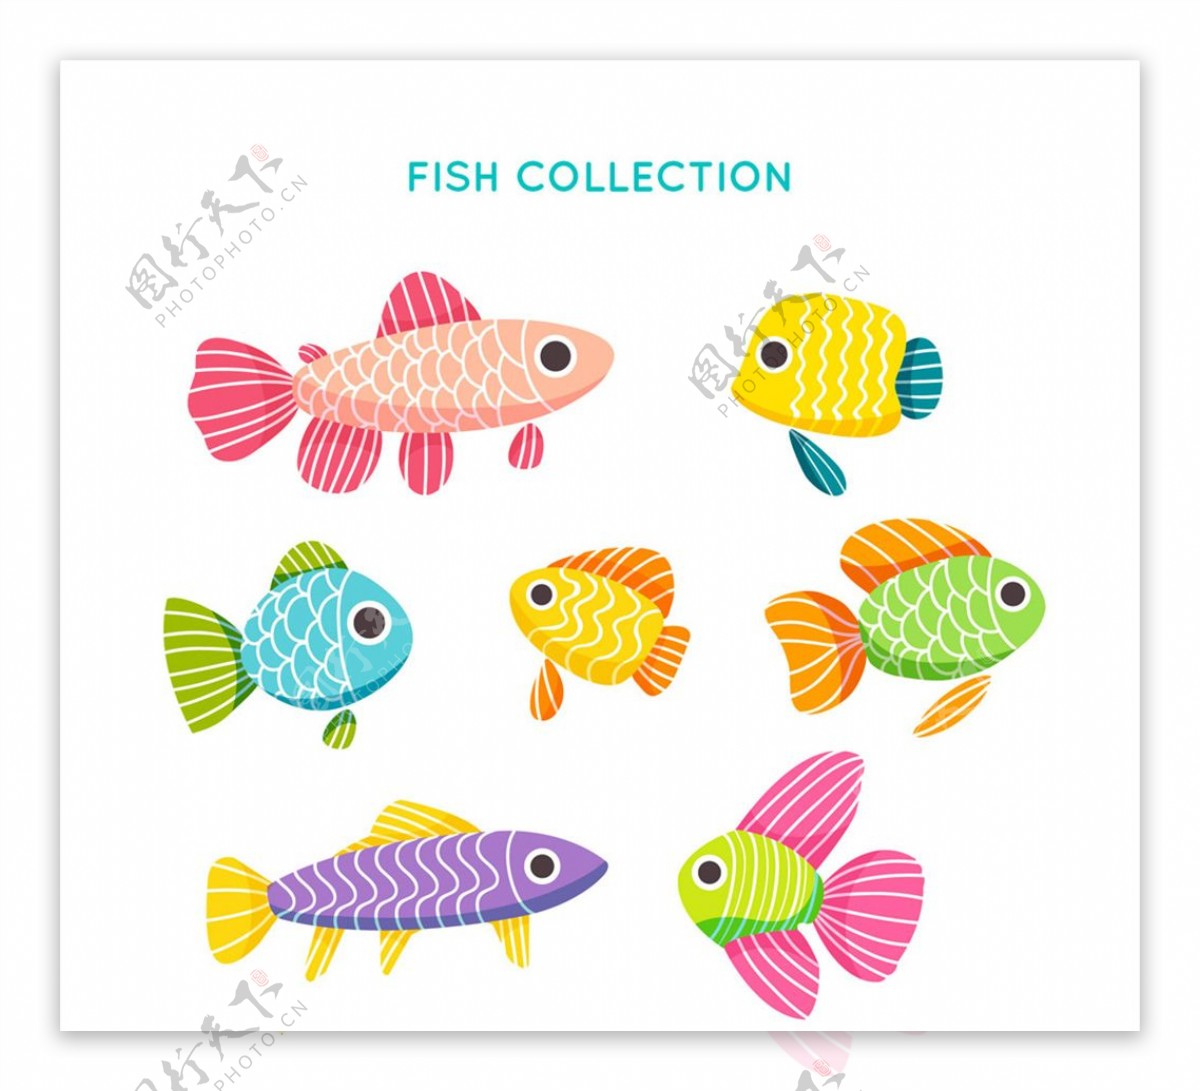 彩色花纹鱼类设计矢量素材